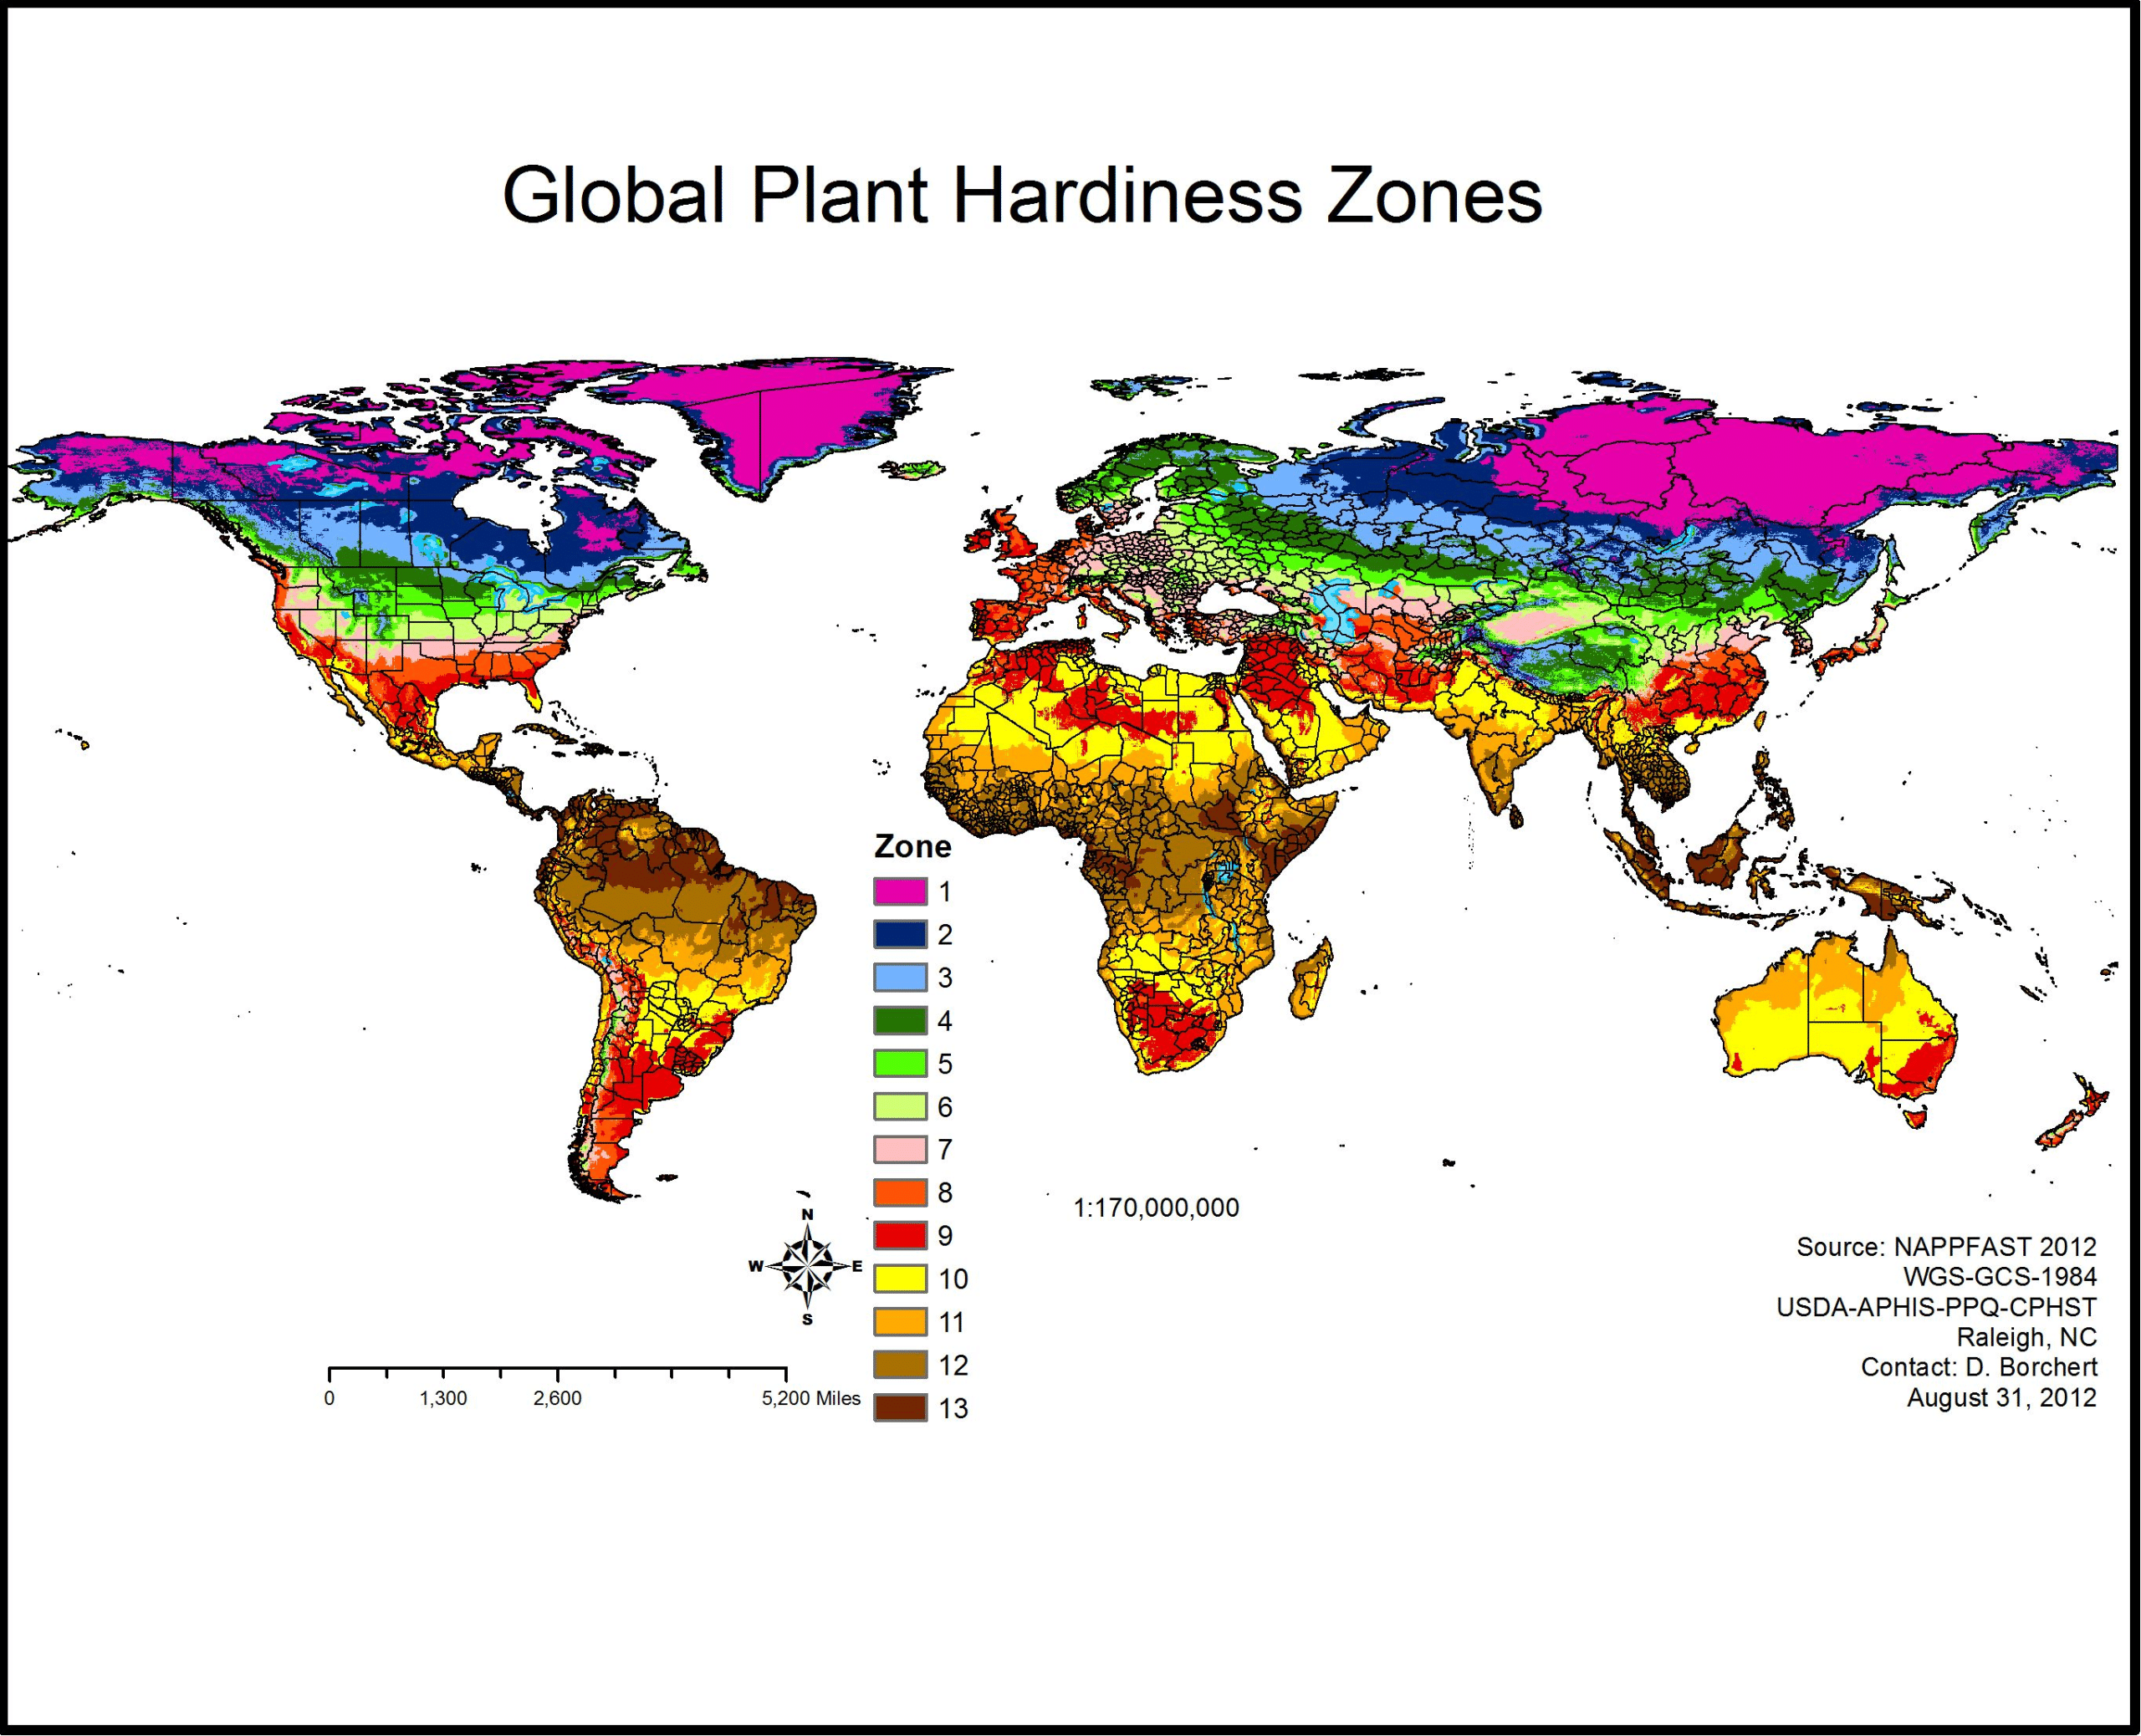 https://en.wikipedia.org/wiki/Hardiness_zone